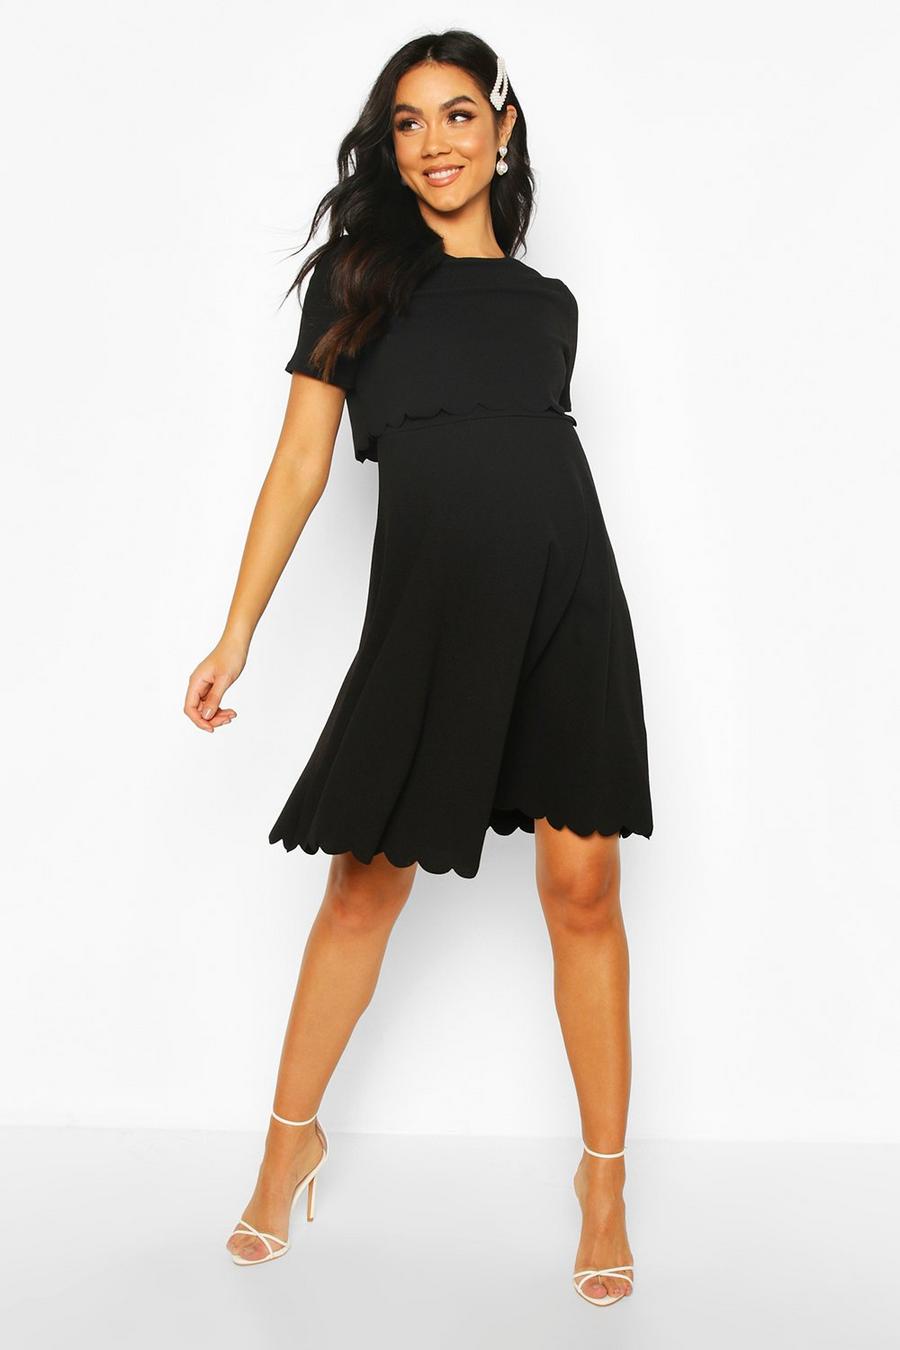 שחור שמלת סקייטר בדוגמת צדפה שכבה כפולה בגדי היריון  image number 1